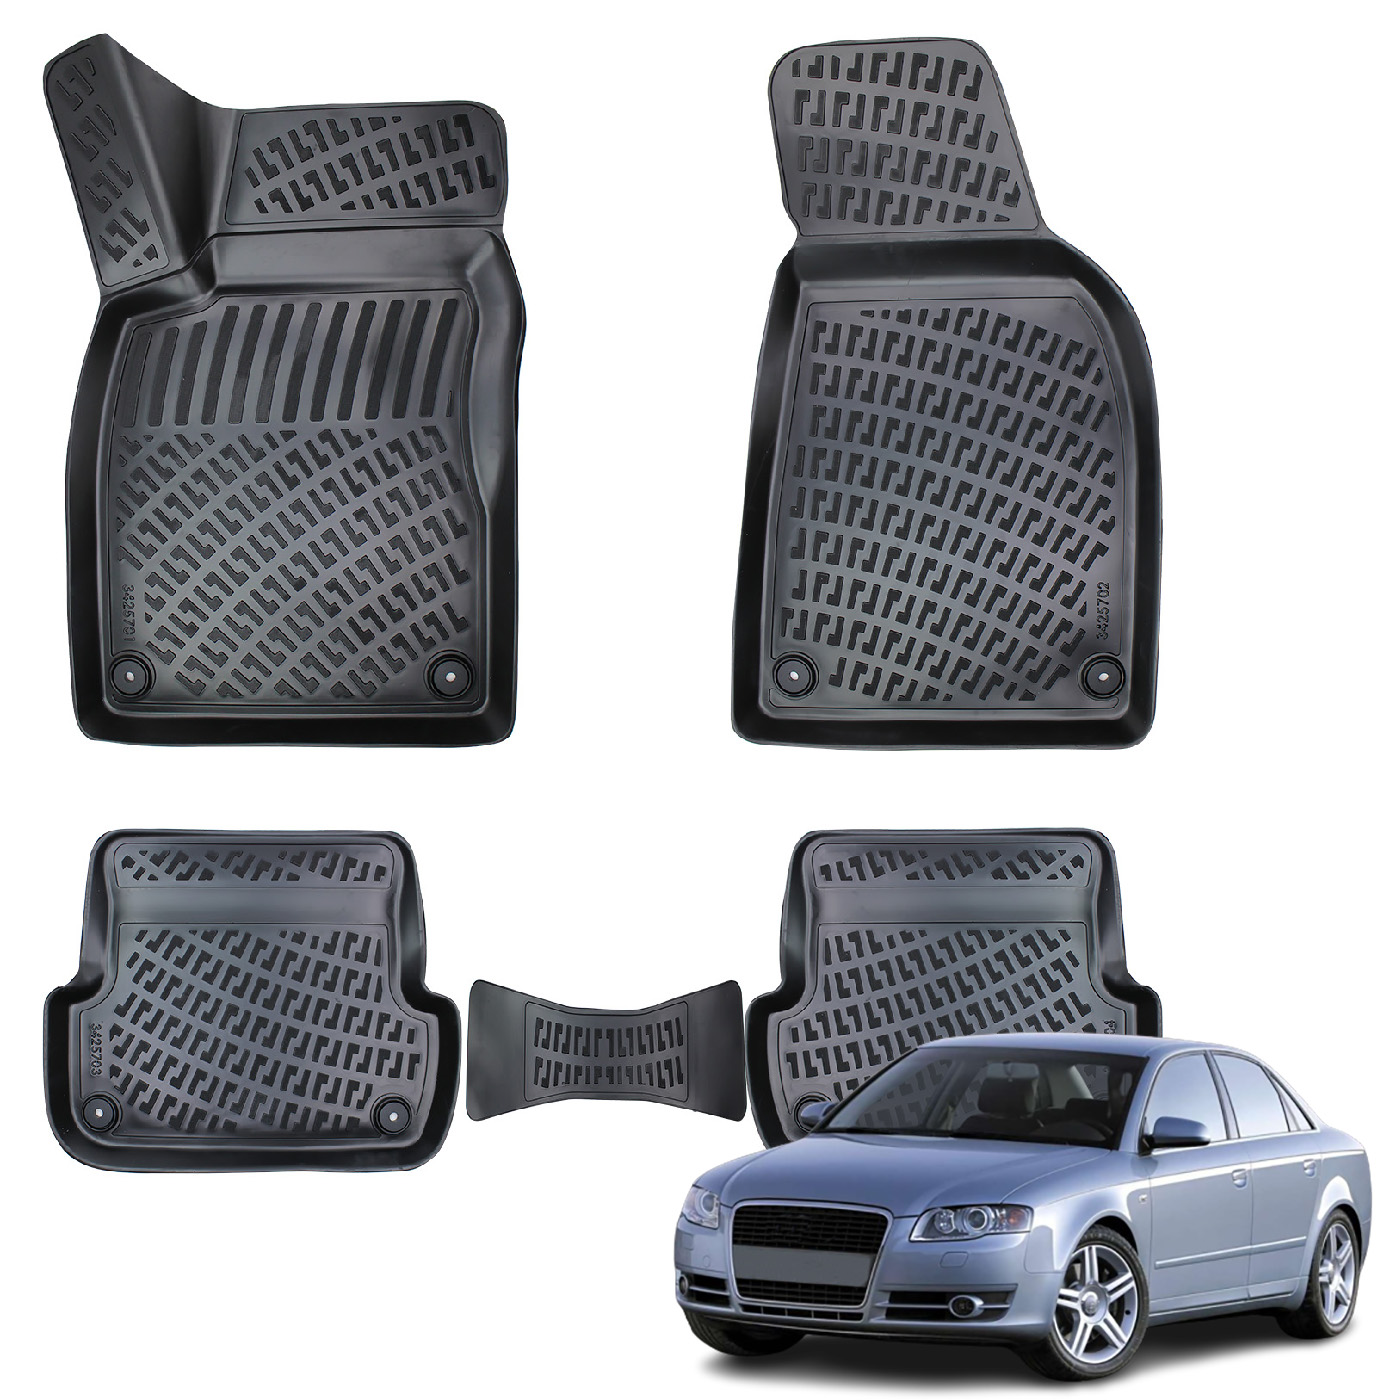 Audi A4 (2004-2008) Kauçuk Paspas (B7) - (Siyah)